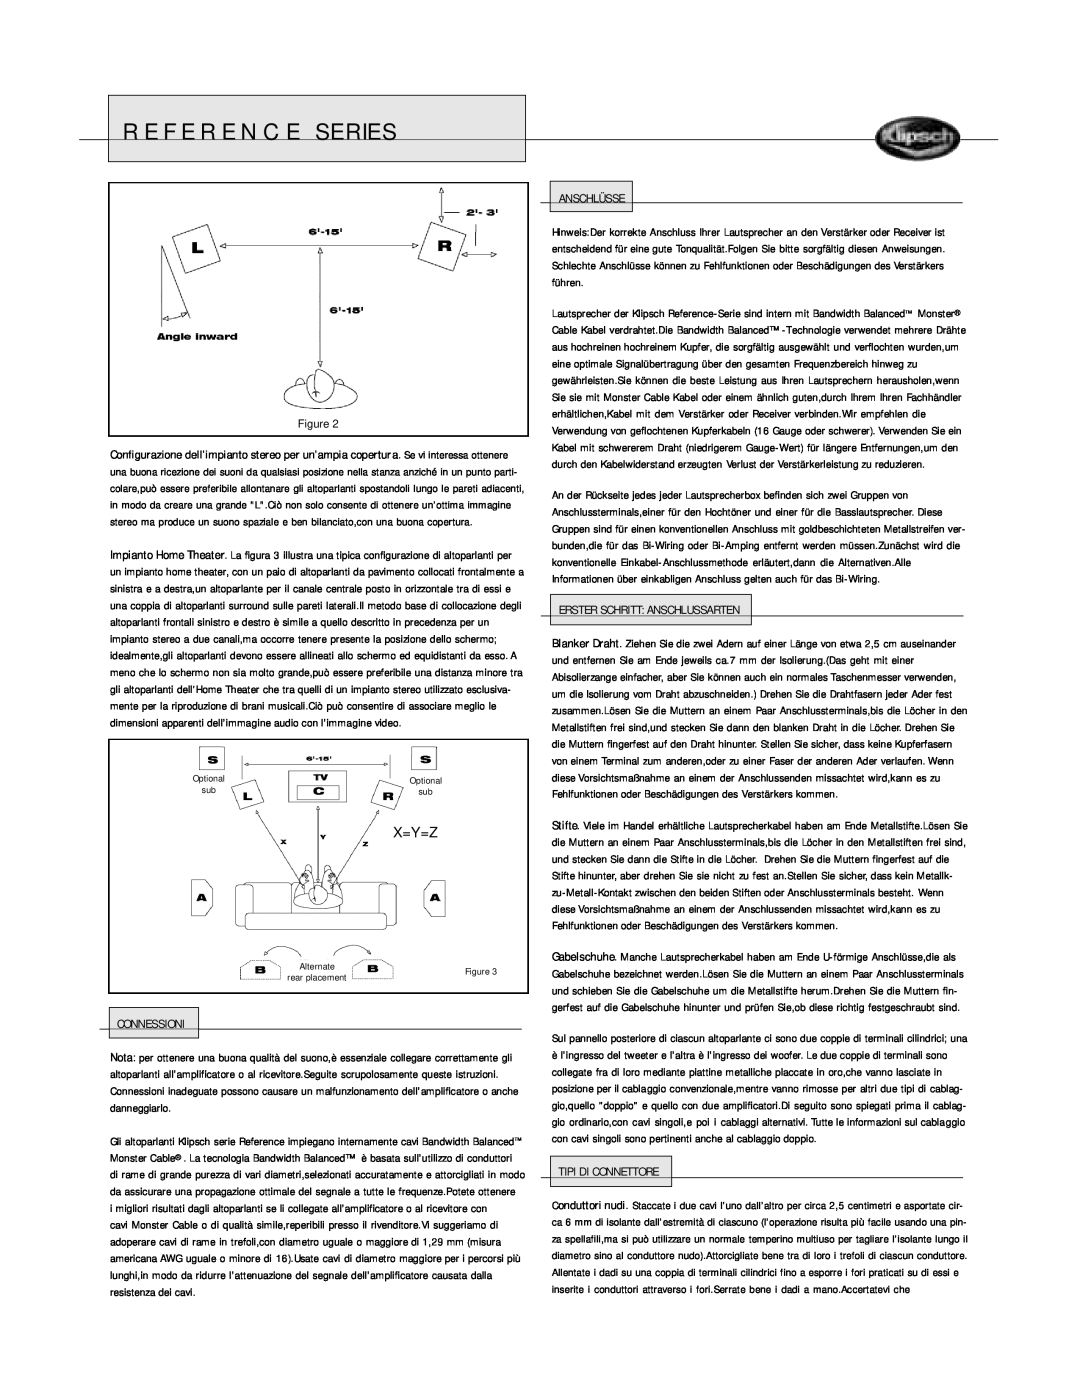 Klipsch Floorstanding Speaker owner manual Reference Series, X=Y=Z, Connessioni, Anschlüsse, Erster Schritt Anschlussarten 